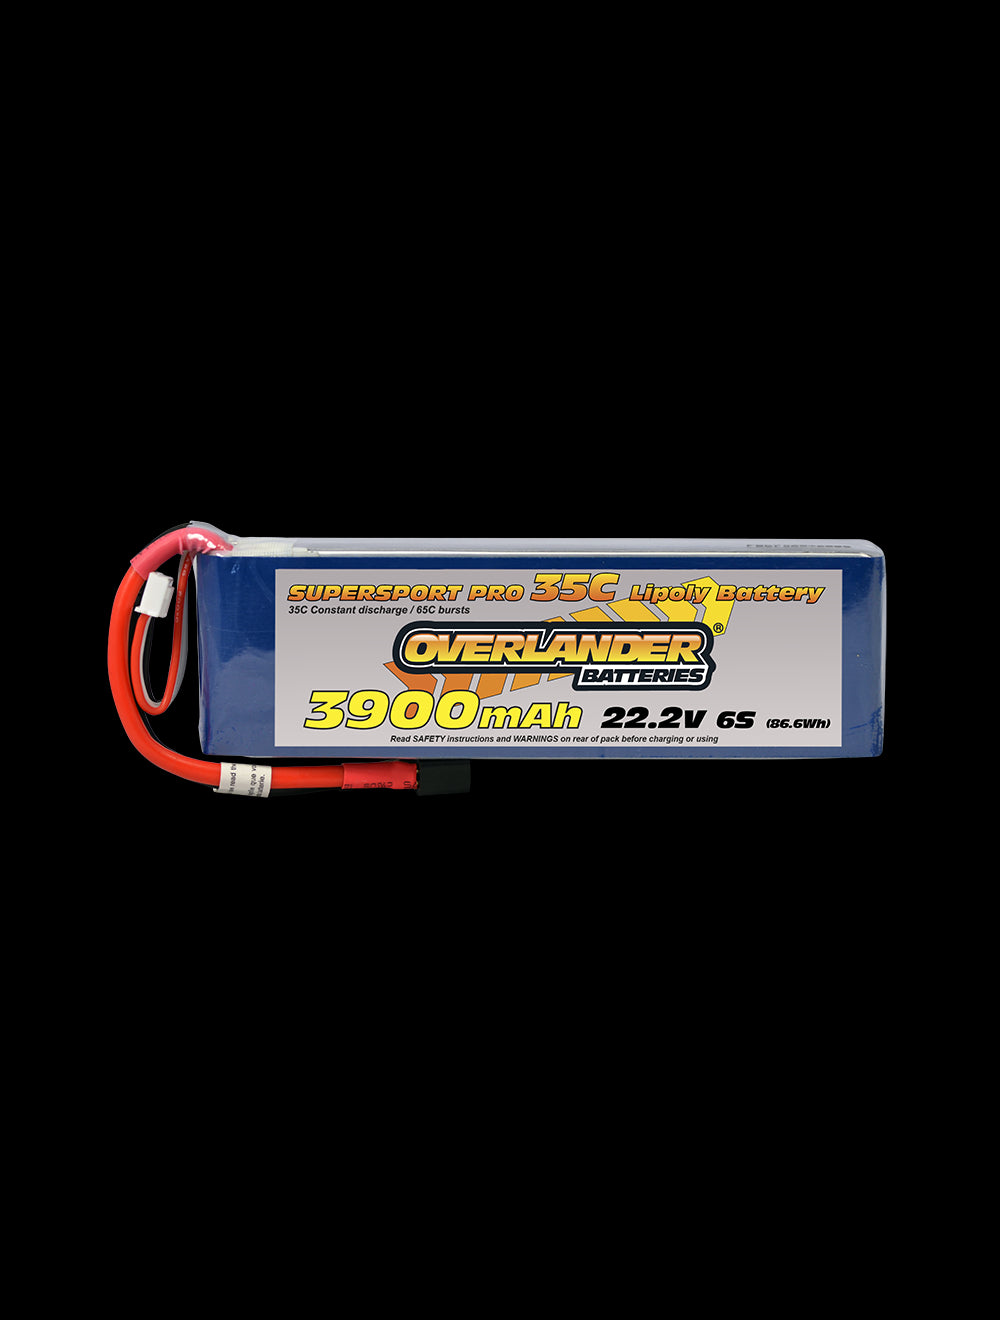 Overlander 3900mAh 22.2V 6S 35C Supersport Pro LiPo Battery - EC3 Connector 2473